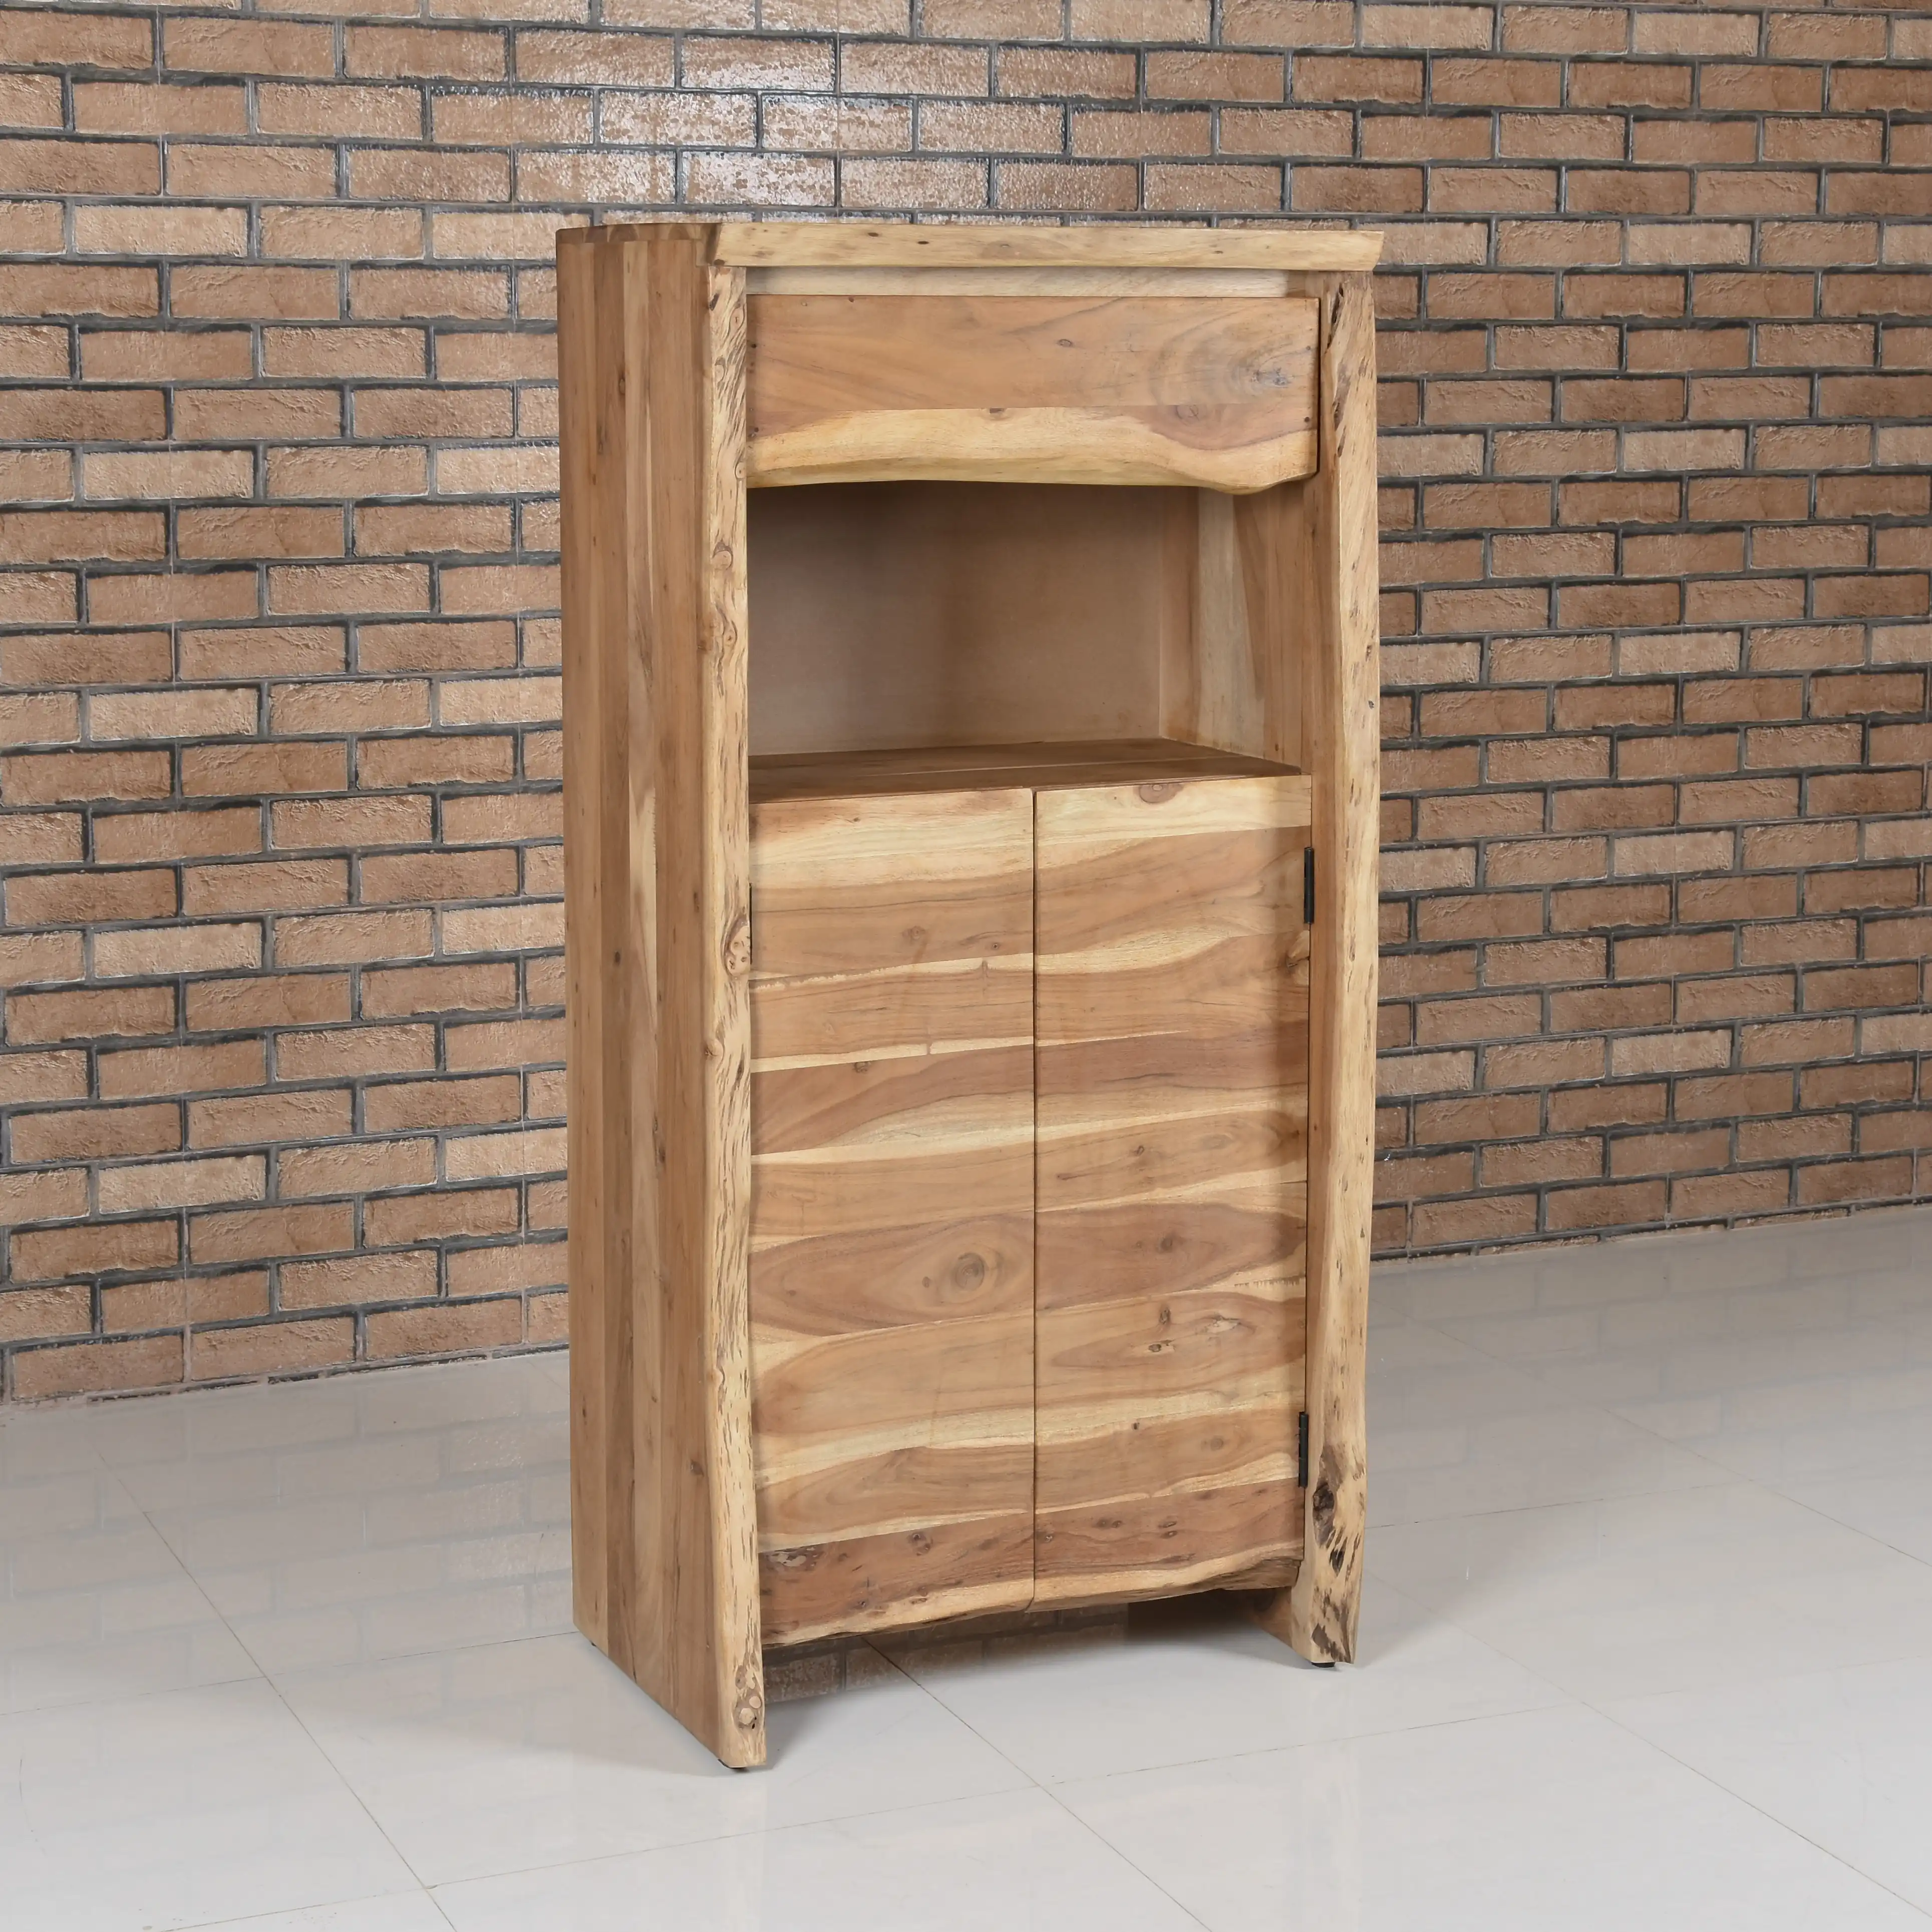 Wooden Live Edge Cabinet with 1 Drawer, 2 Doors &1 Open Shelf - popular handicrafts